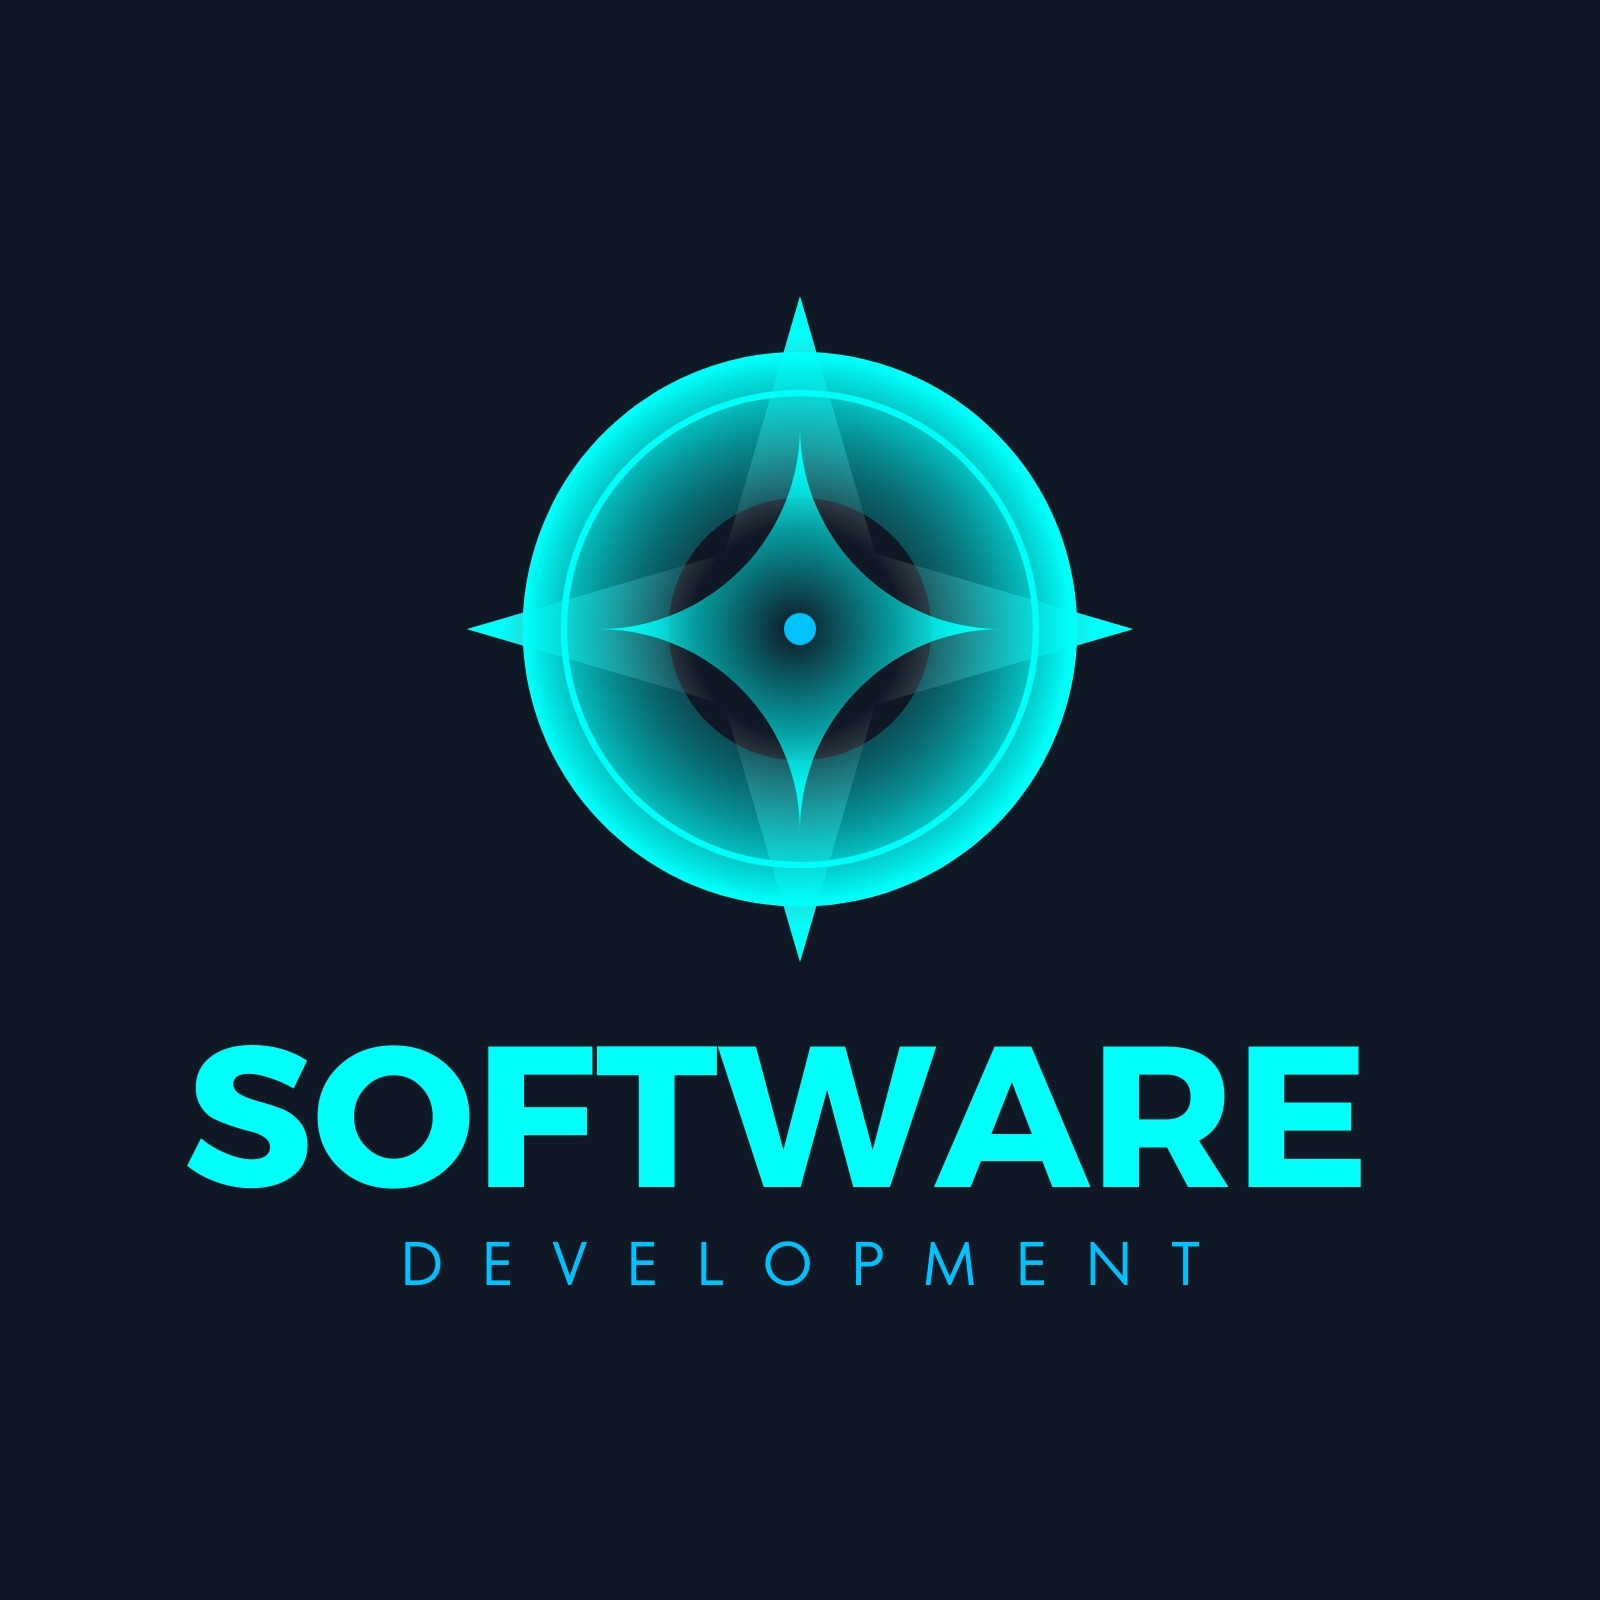 97 Software Logos | BrandCrowd blog